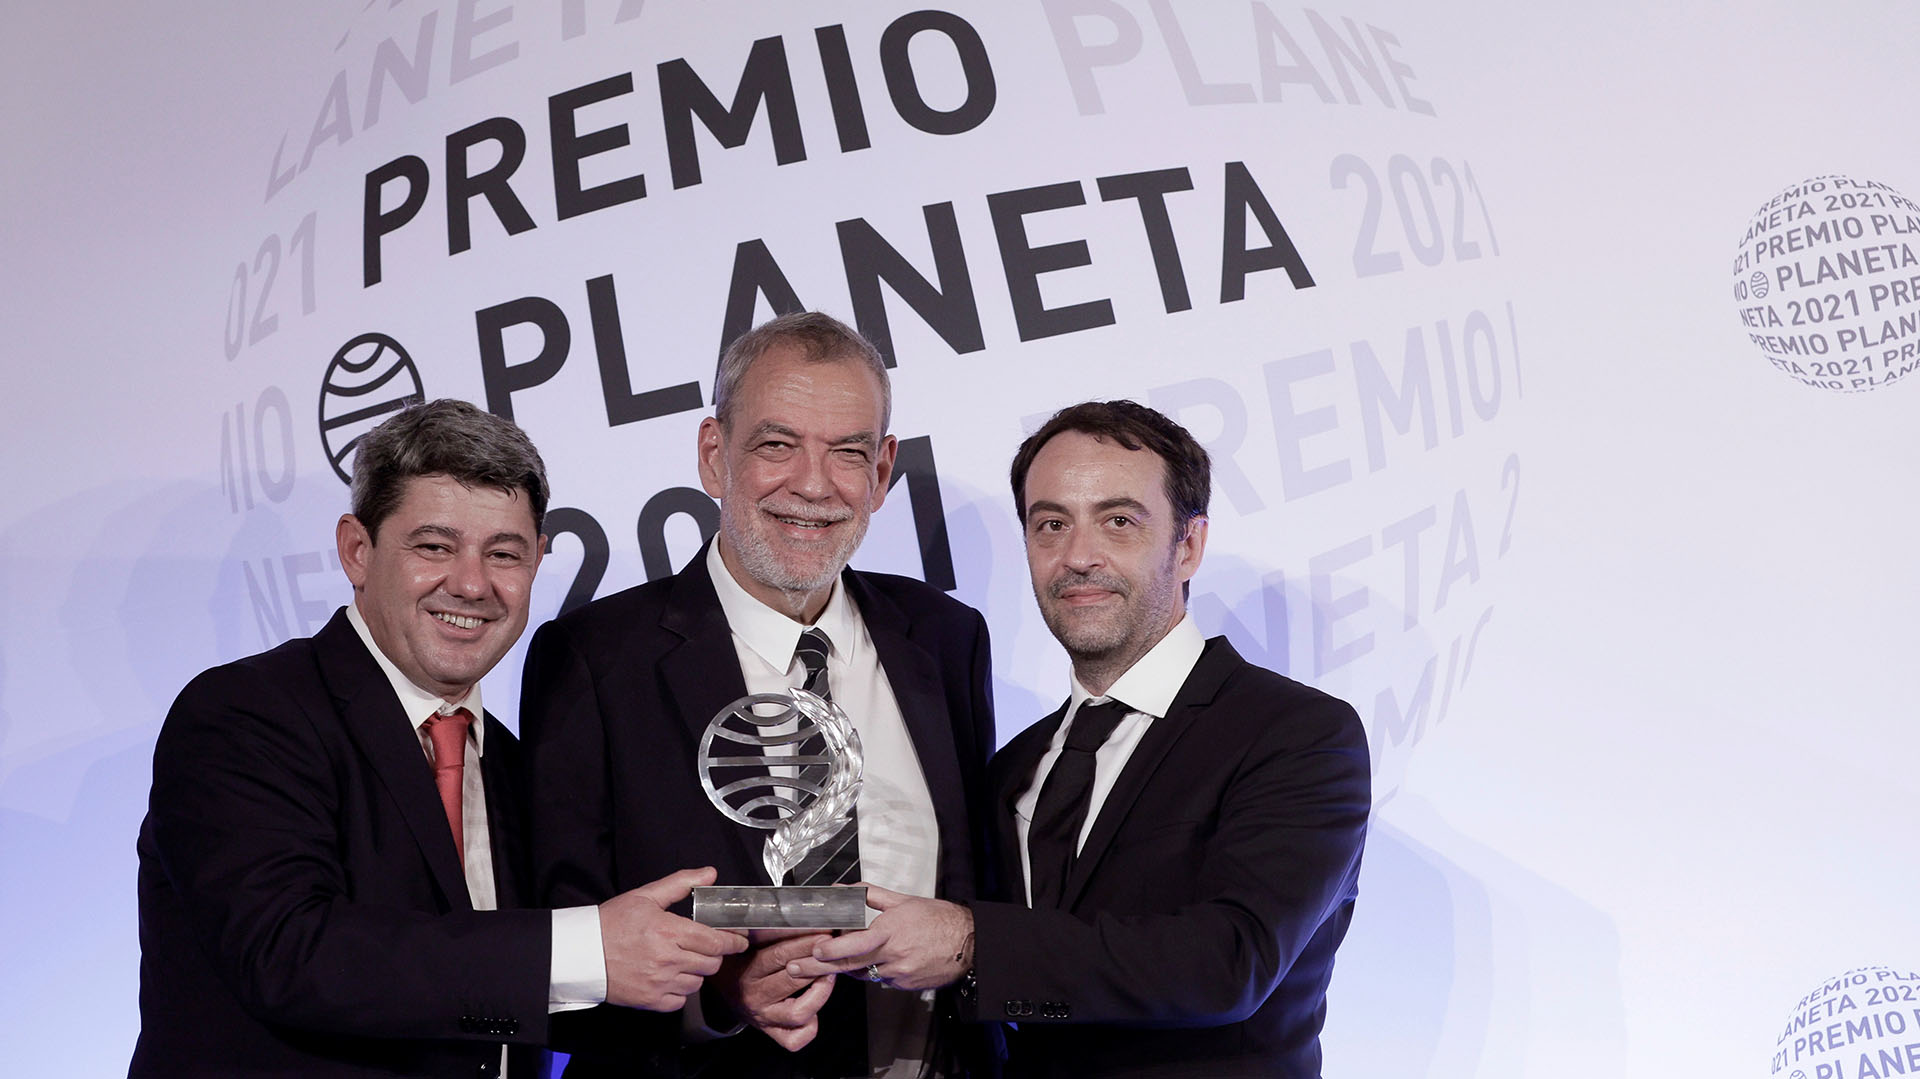 Antonio Mercero, Jorge Díaz y Agustín Martínez, autores de la novela "La Bestia", presentada bajo el seudónimo de Carmen Mola, tras recibir el Premio Planeta (EFE/Quique García)